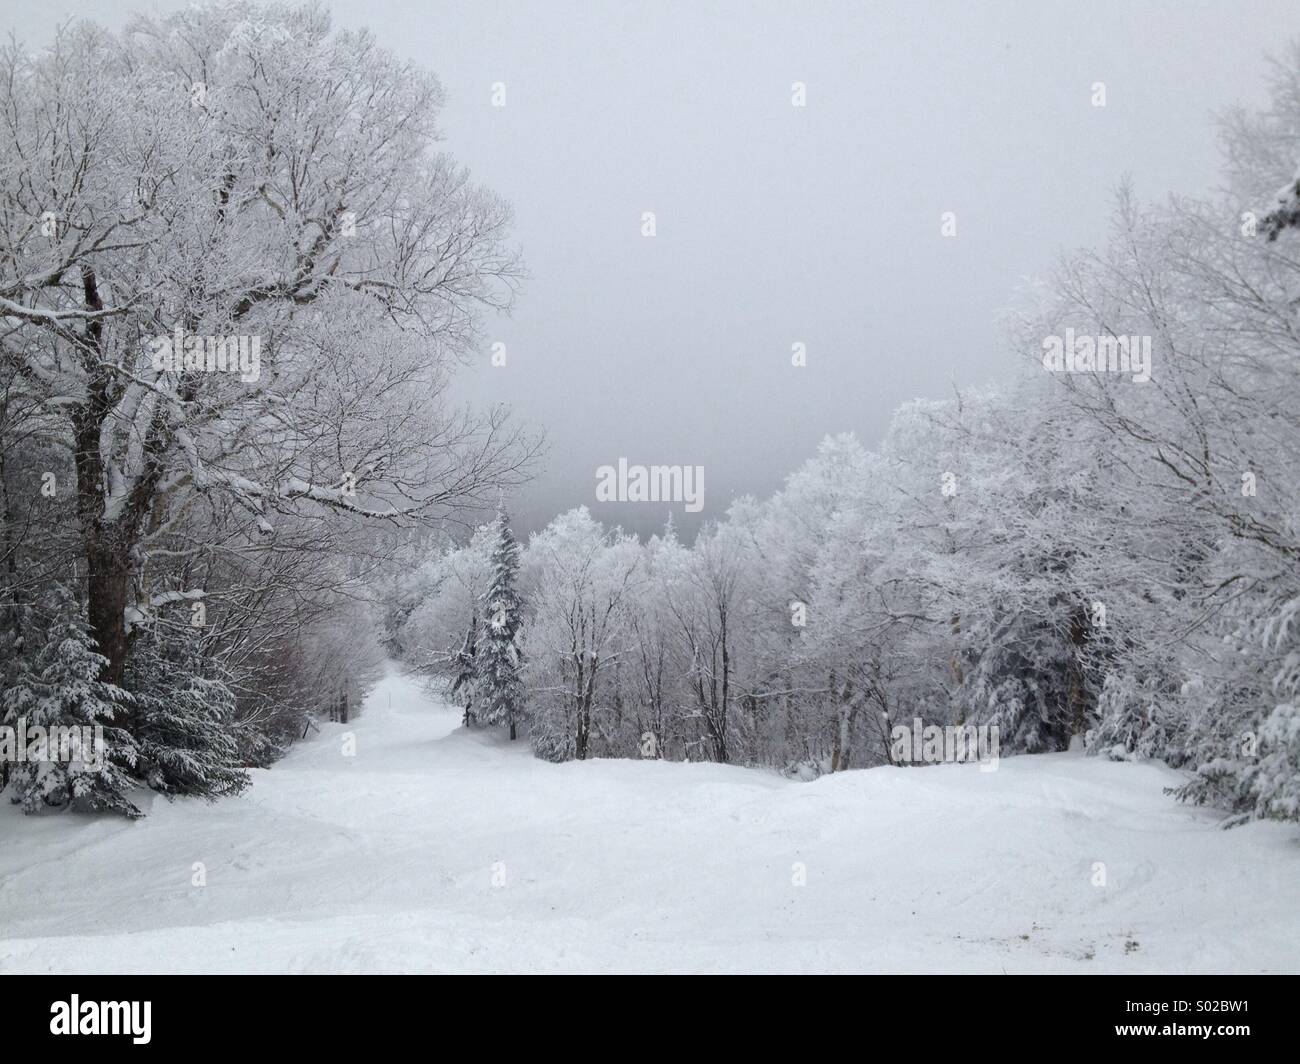 Winter wonderland in Vermont Stock Photo